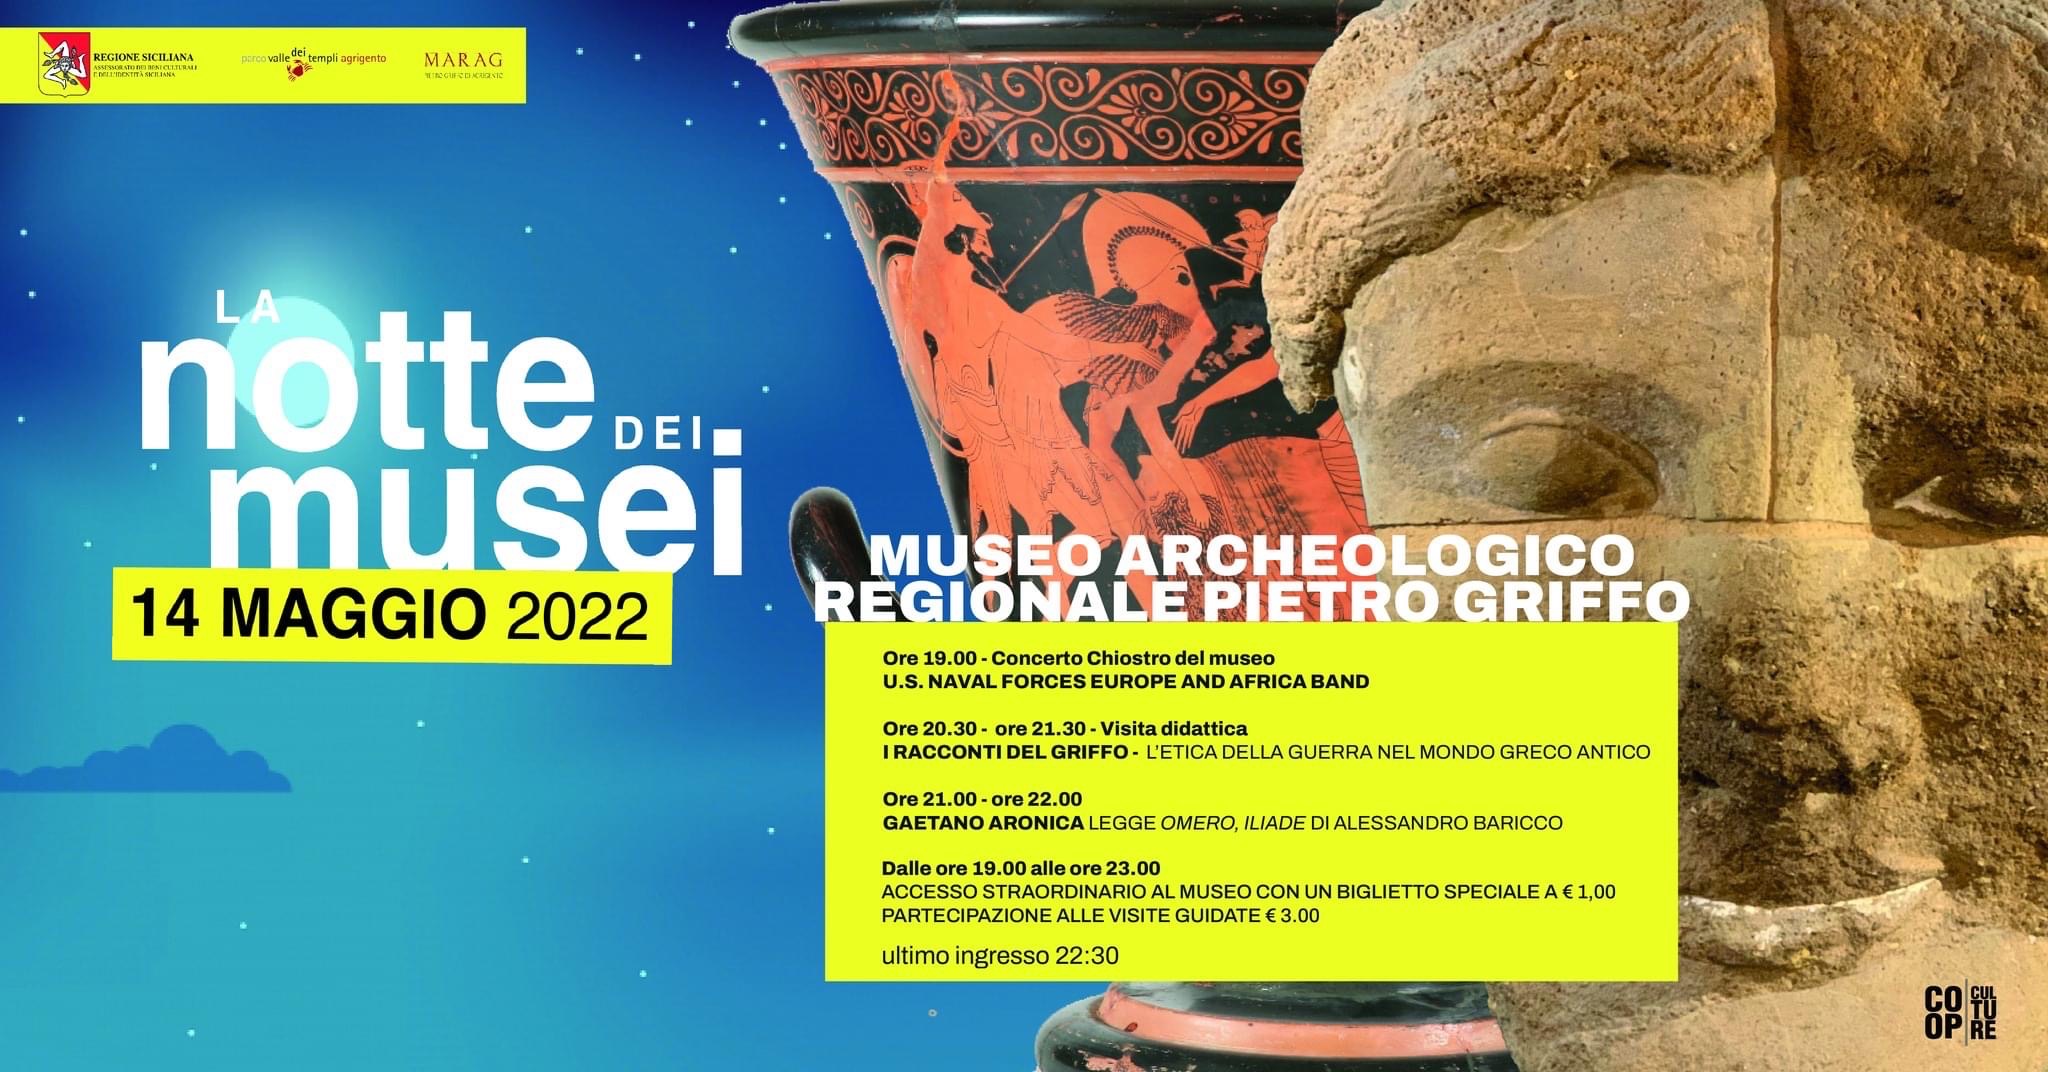 La Notte dei Musei 2022